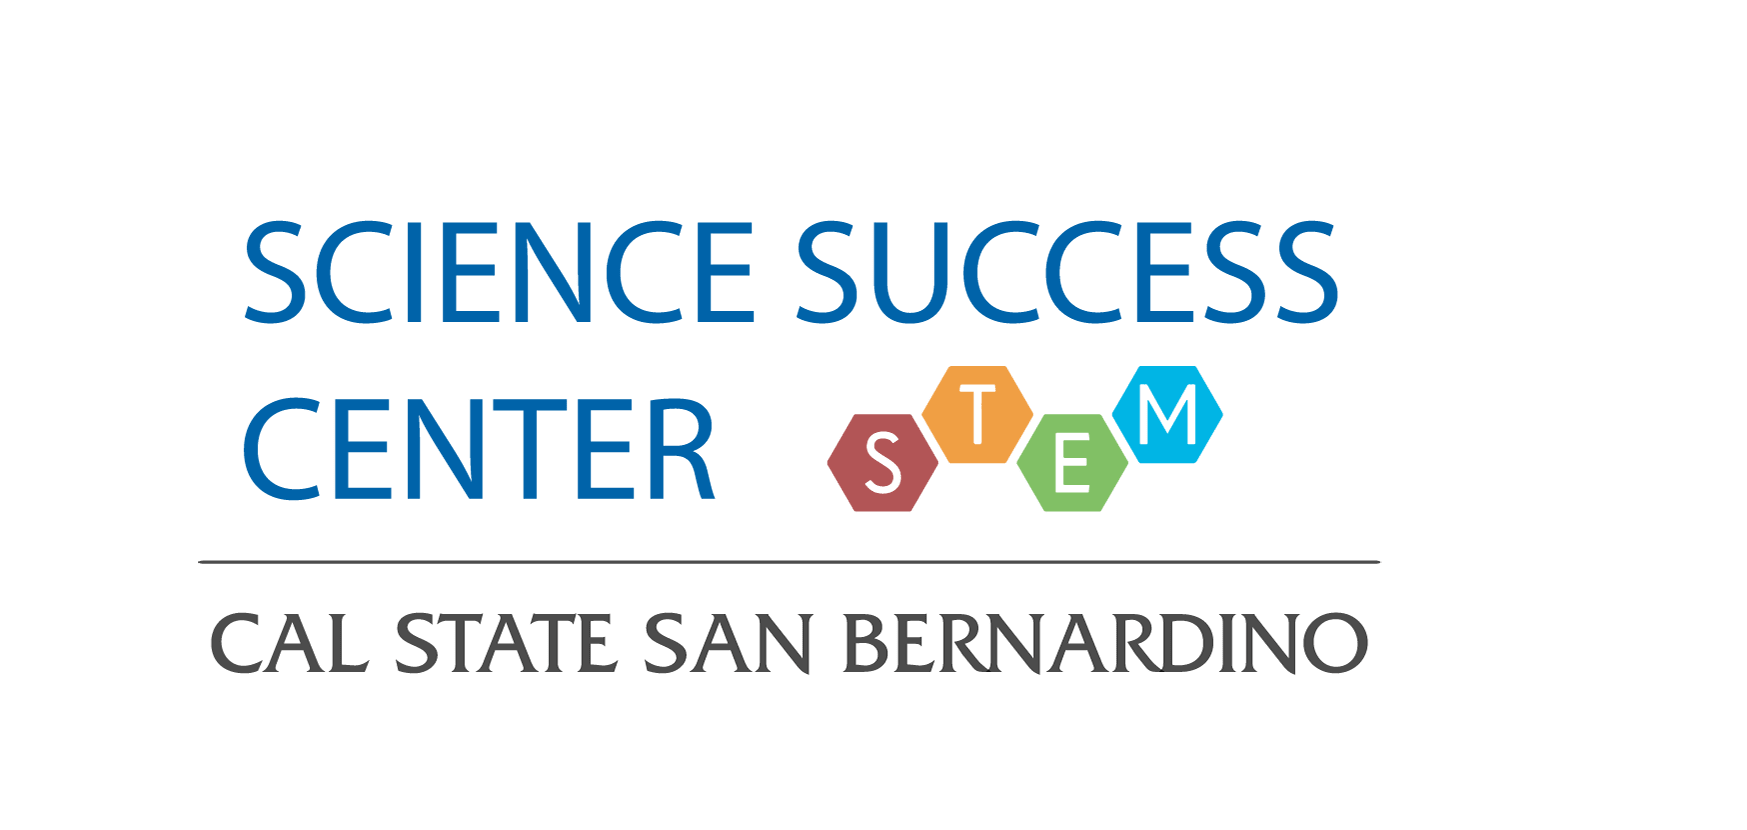 Advising Science Success Center Csusb